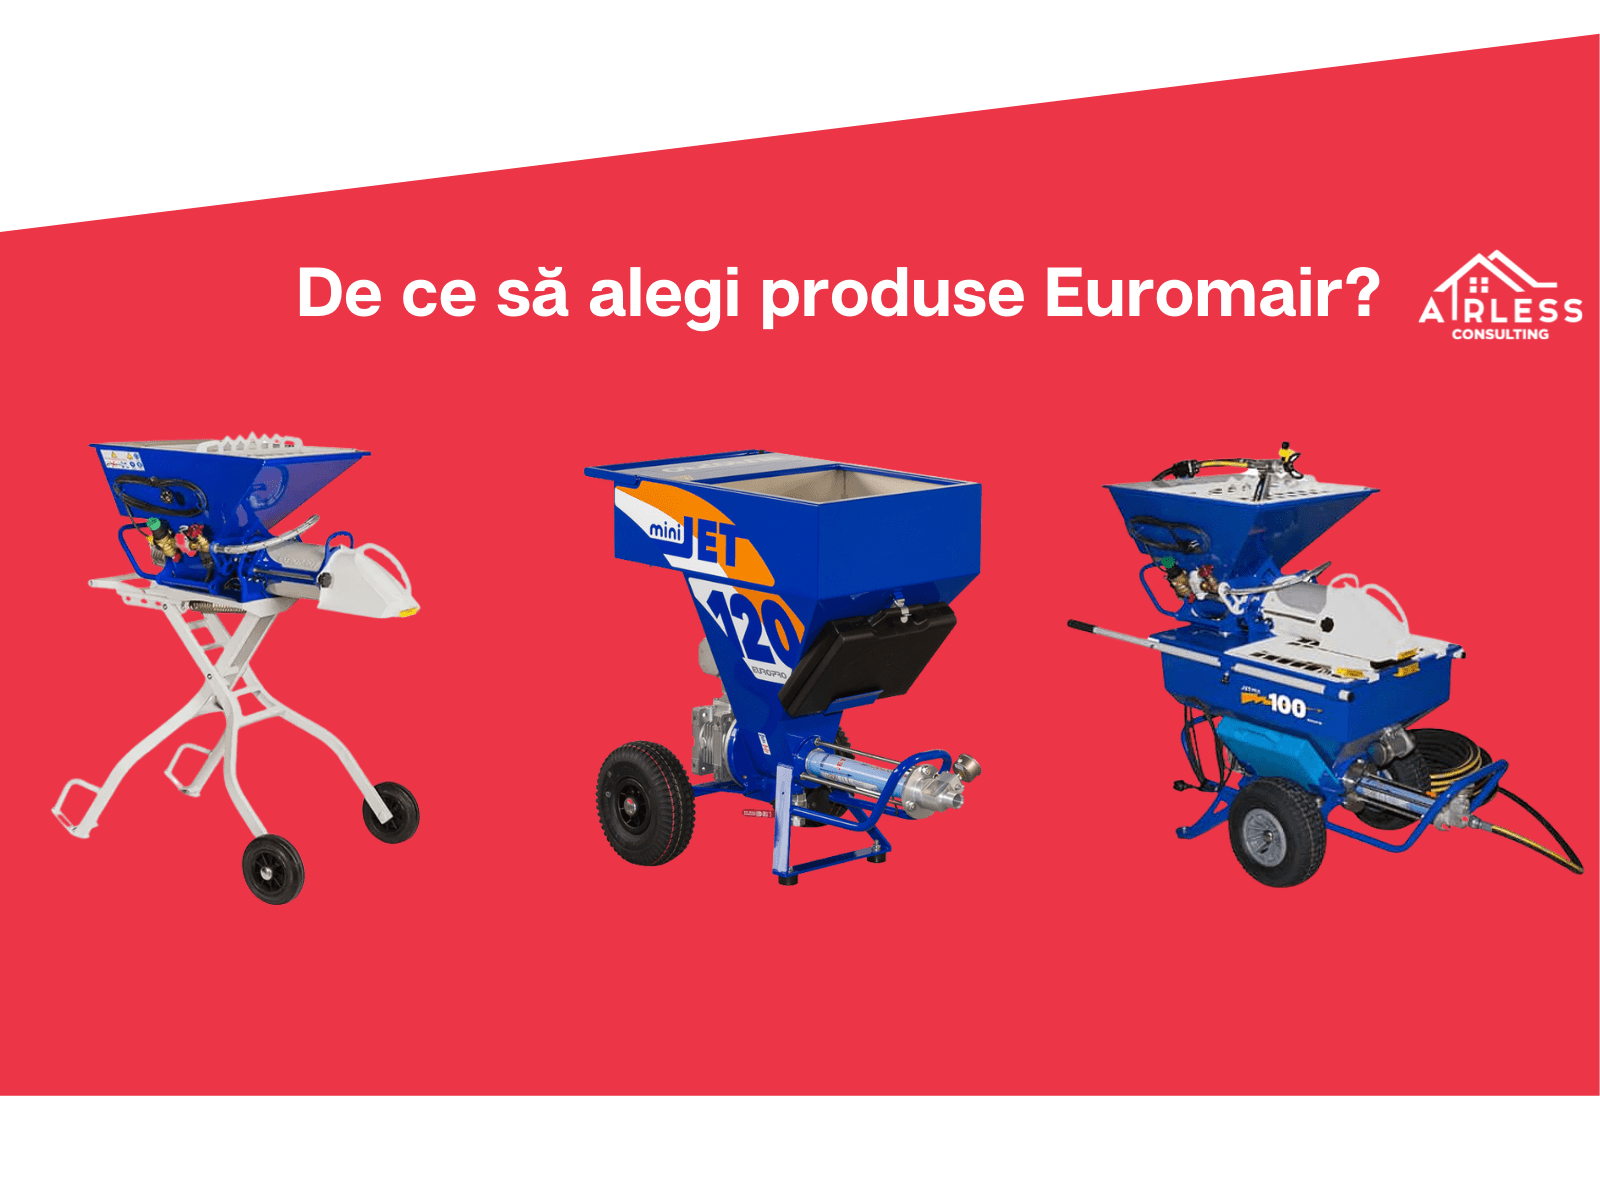 De ce sa alegi produse Euromair?